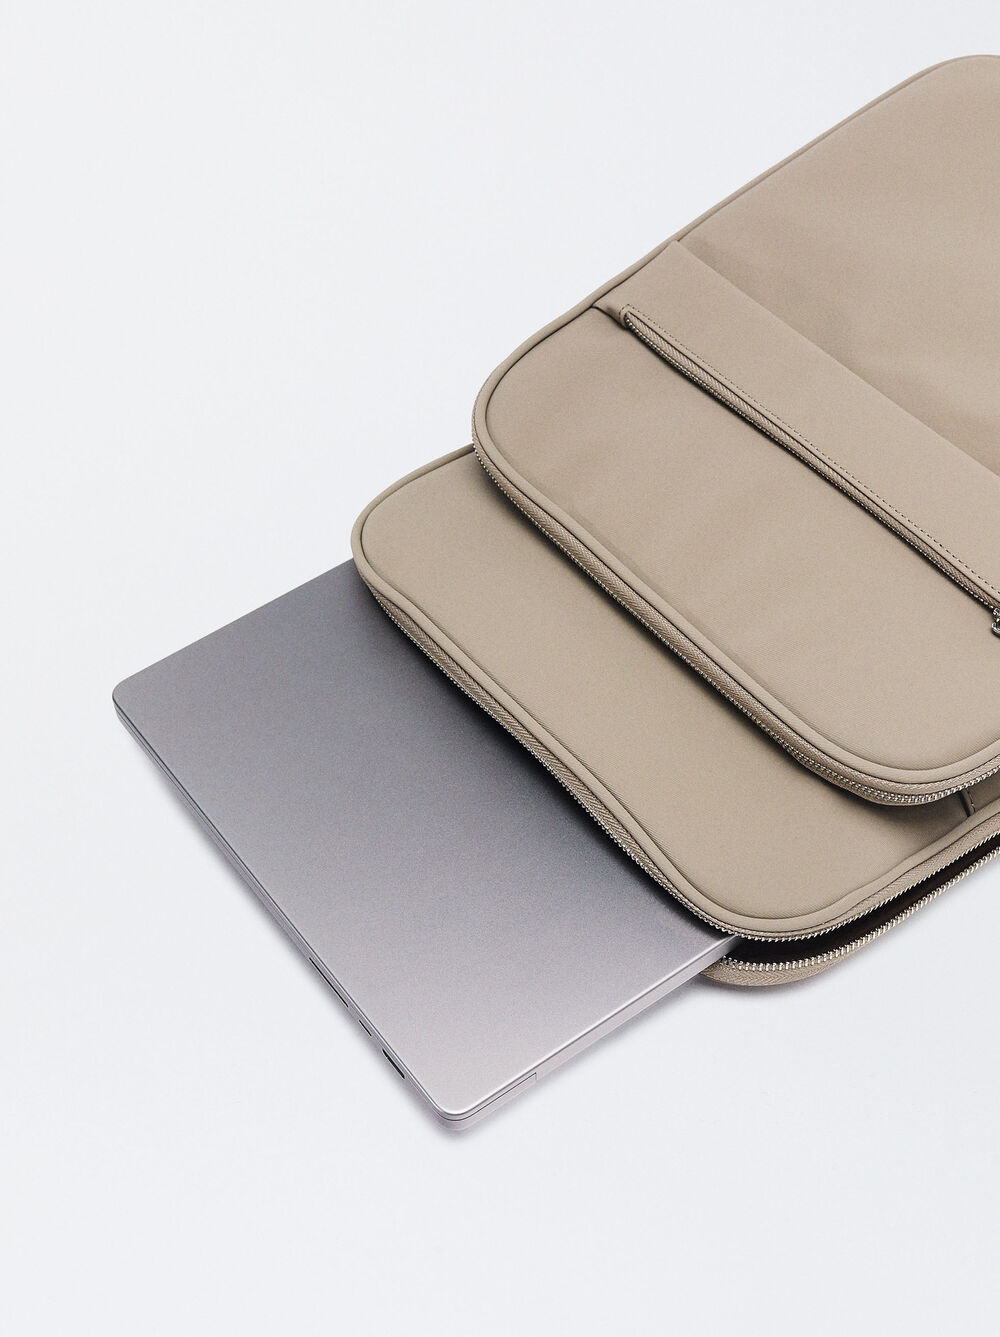 Nylon-Effect Backpack For 15” Laptop